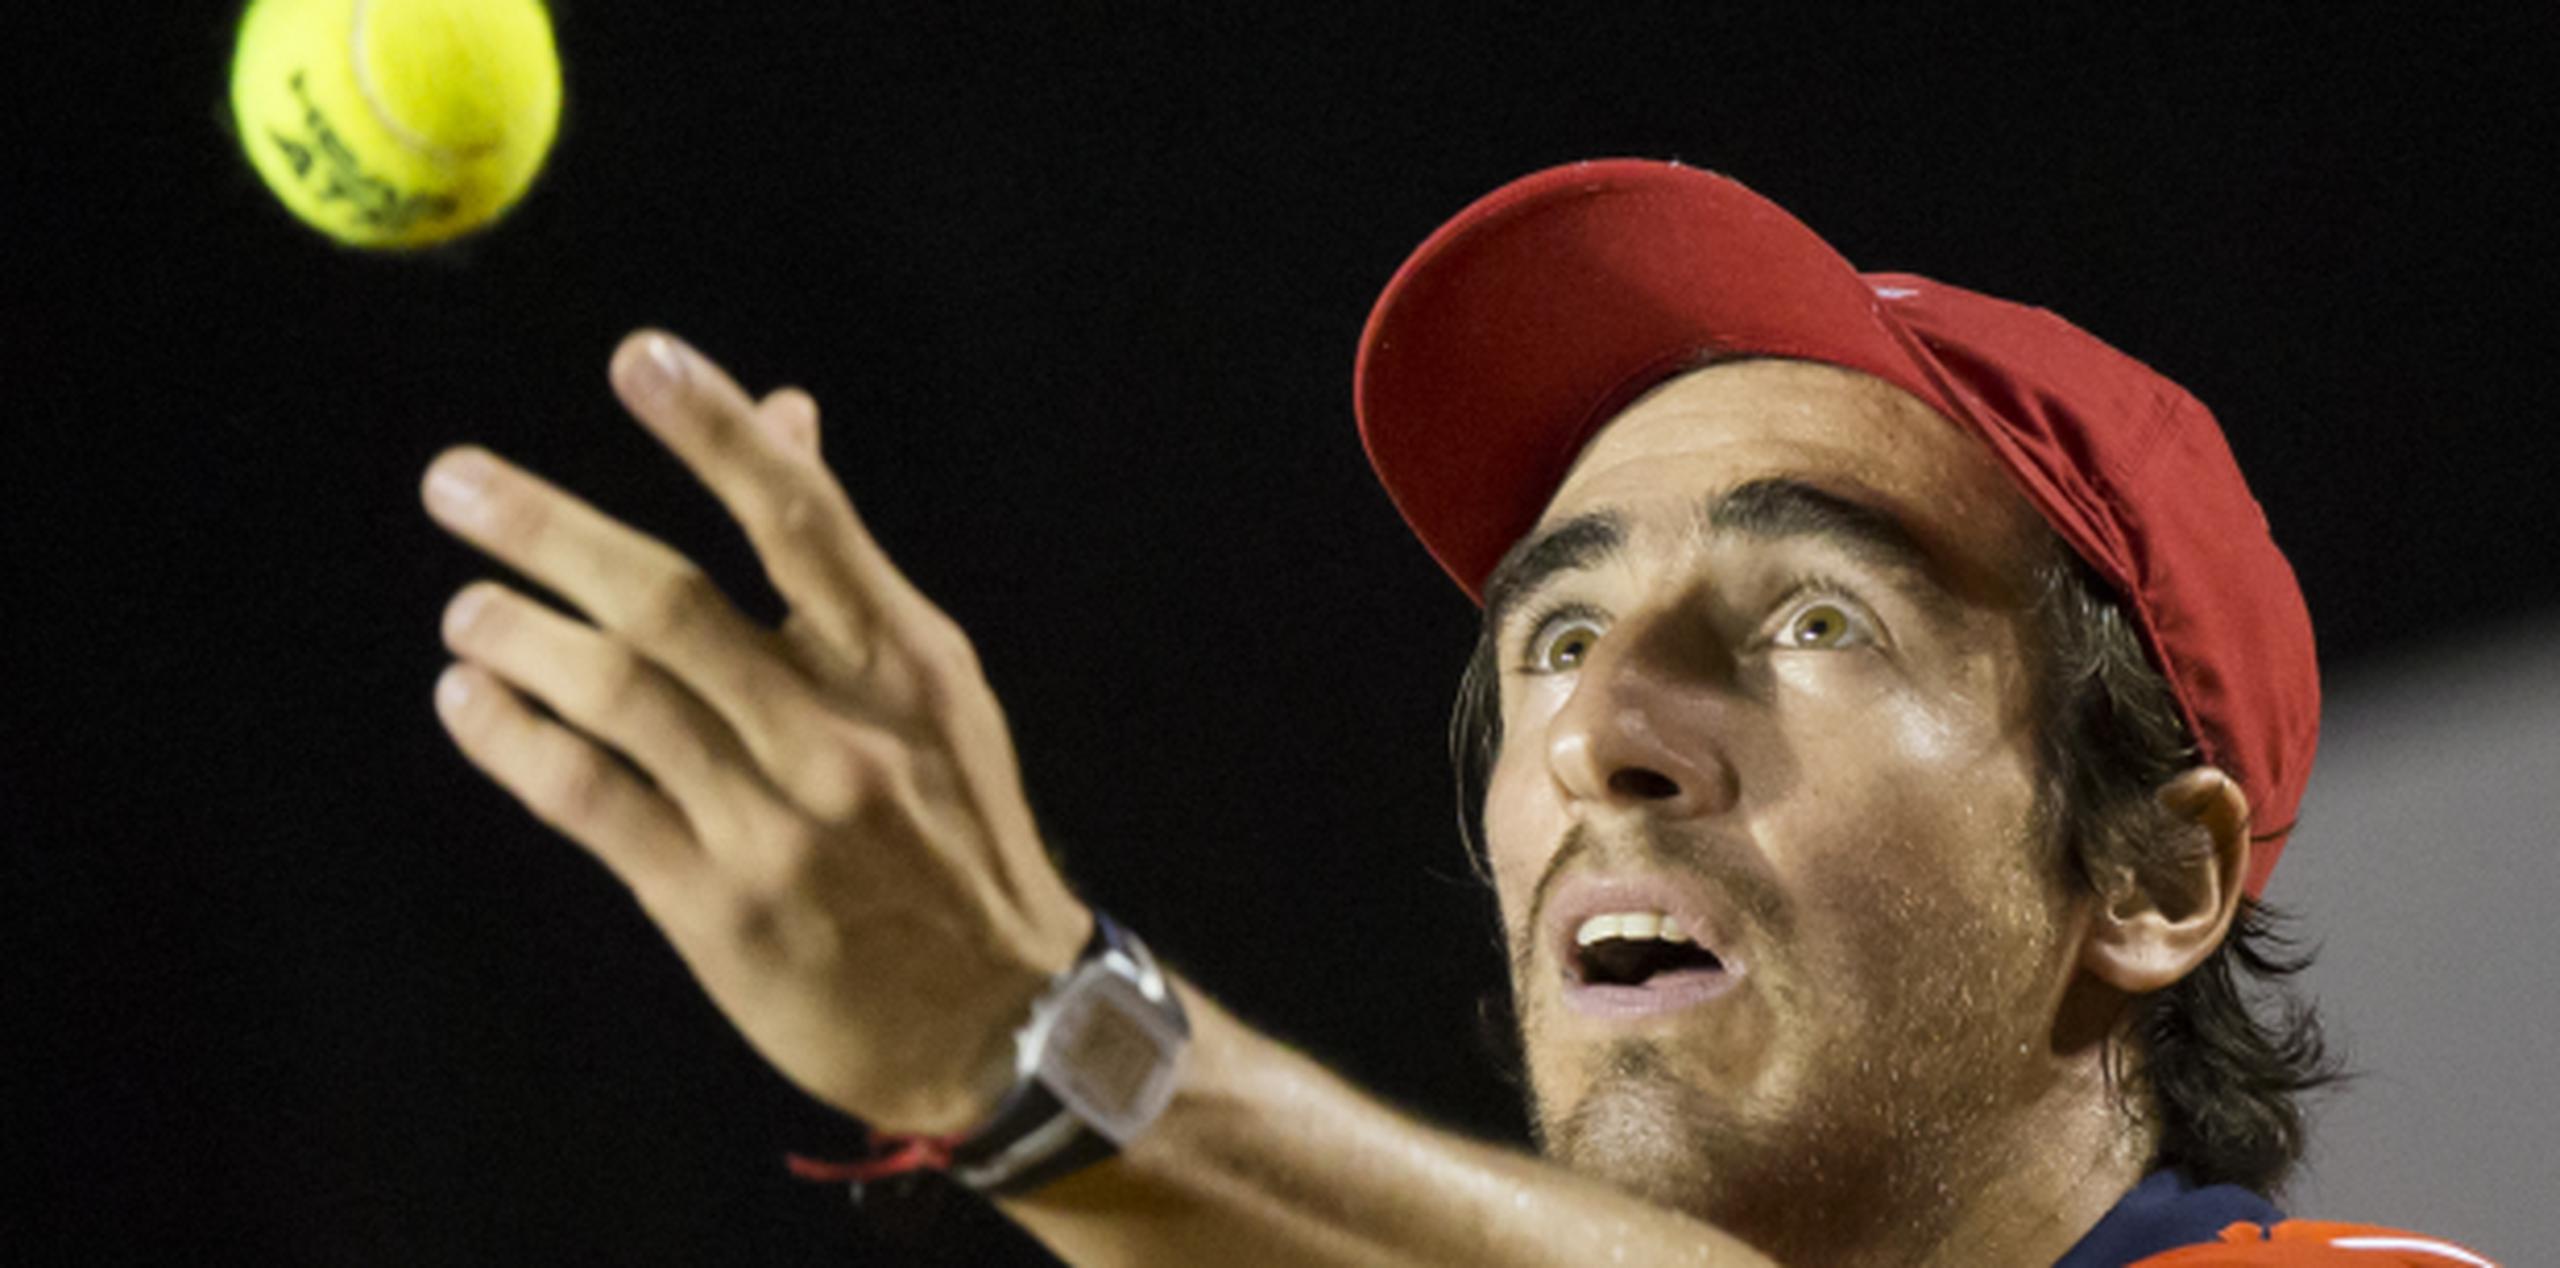 Pablo Cuevas alcanzó en febrero el puesto 23 en el ranking ATP, la mejor posición alcanzada por un uruguayo. (Fotos/AP)